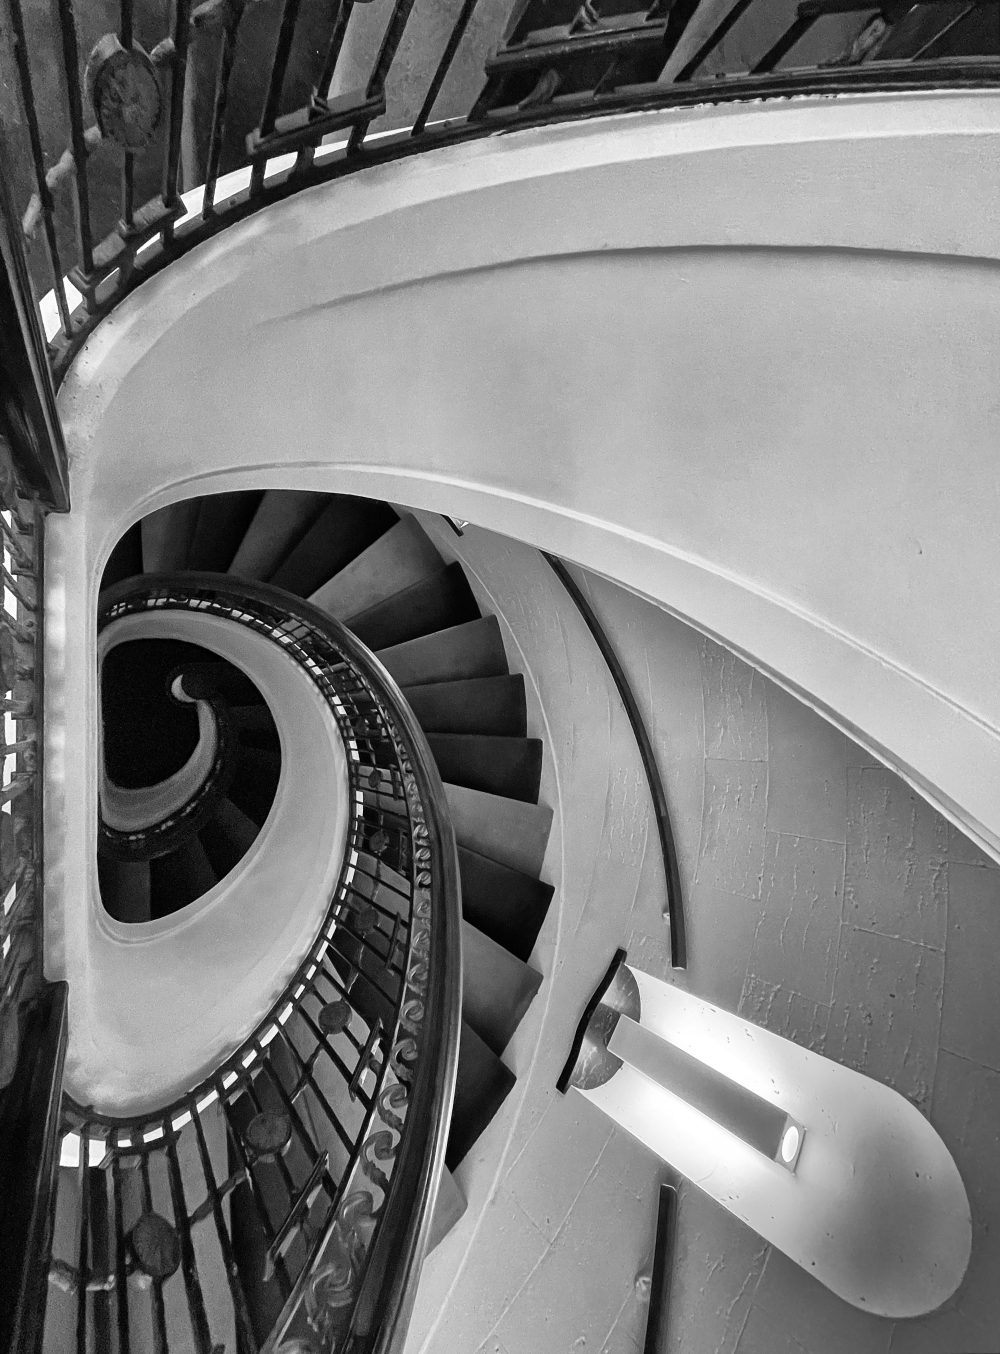 Stairway from above, 21c Museum Hotel, Cincinnati #6866